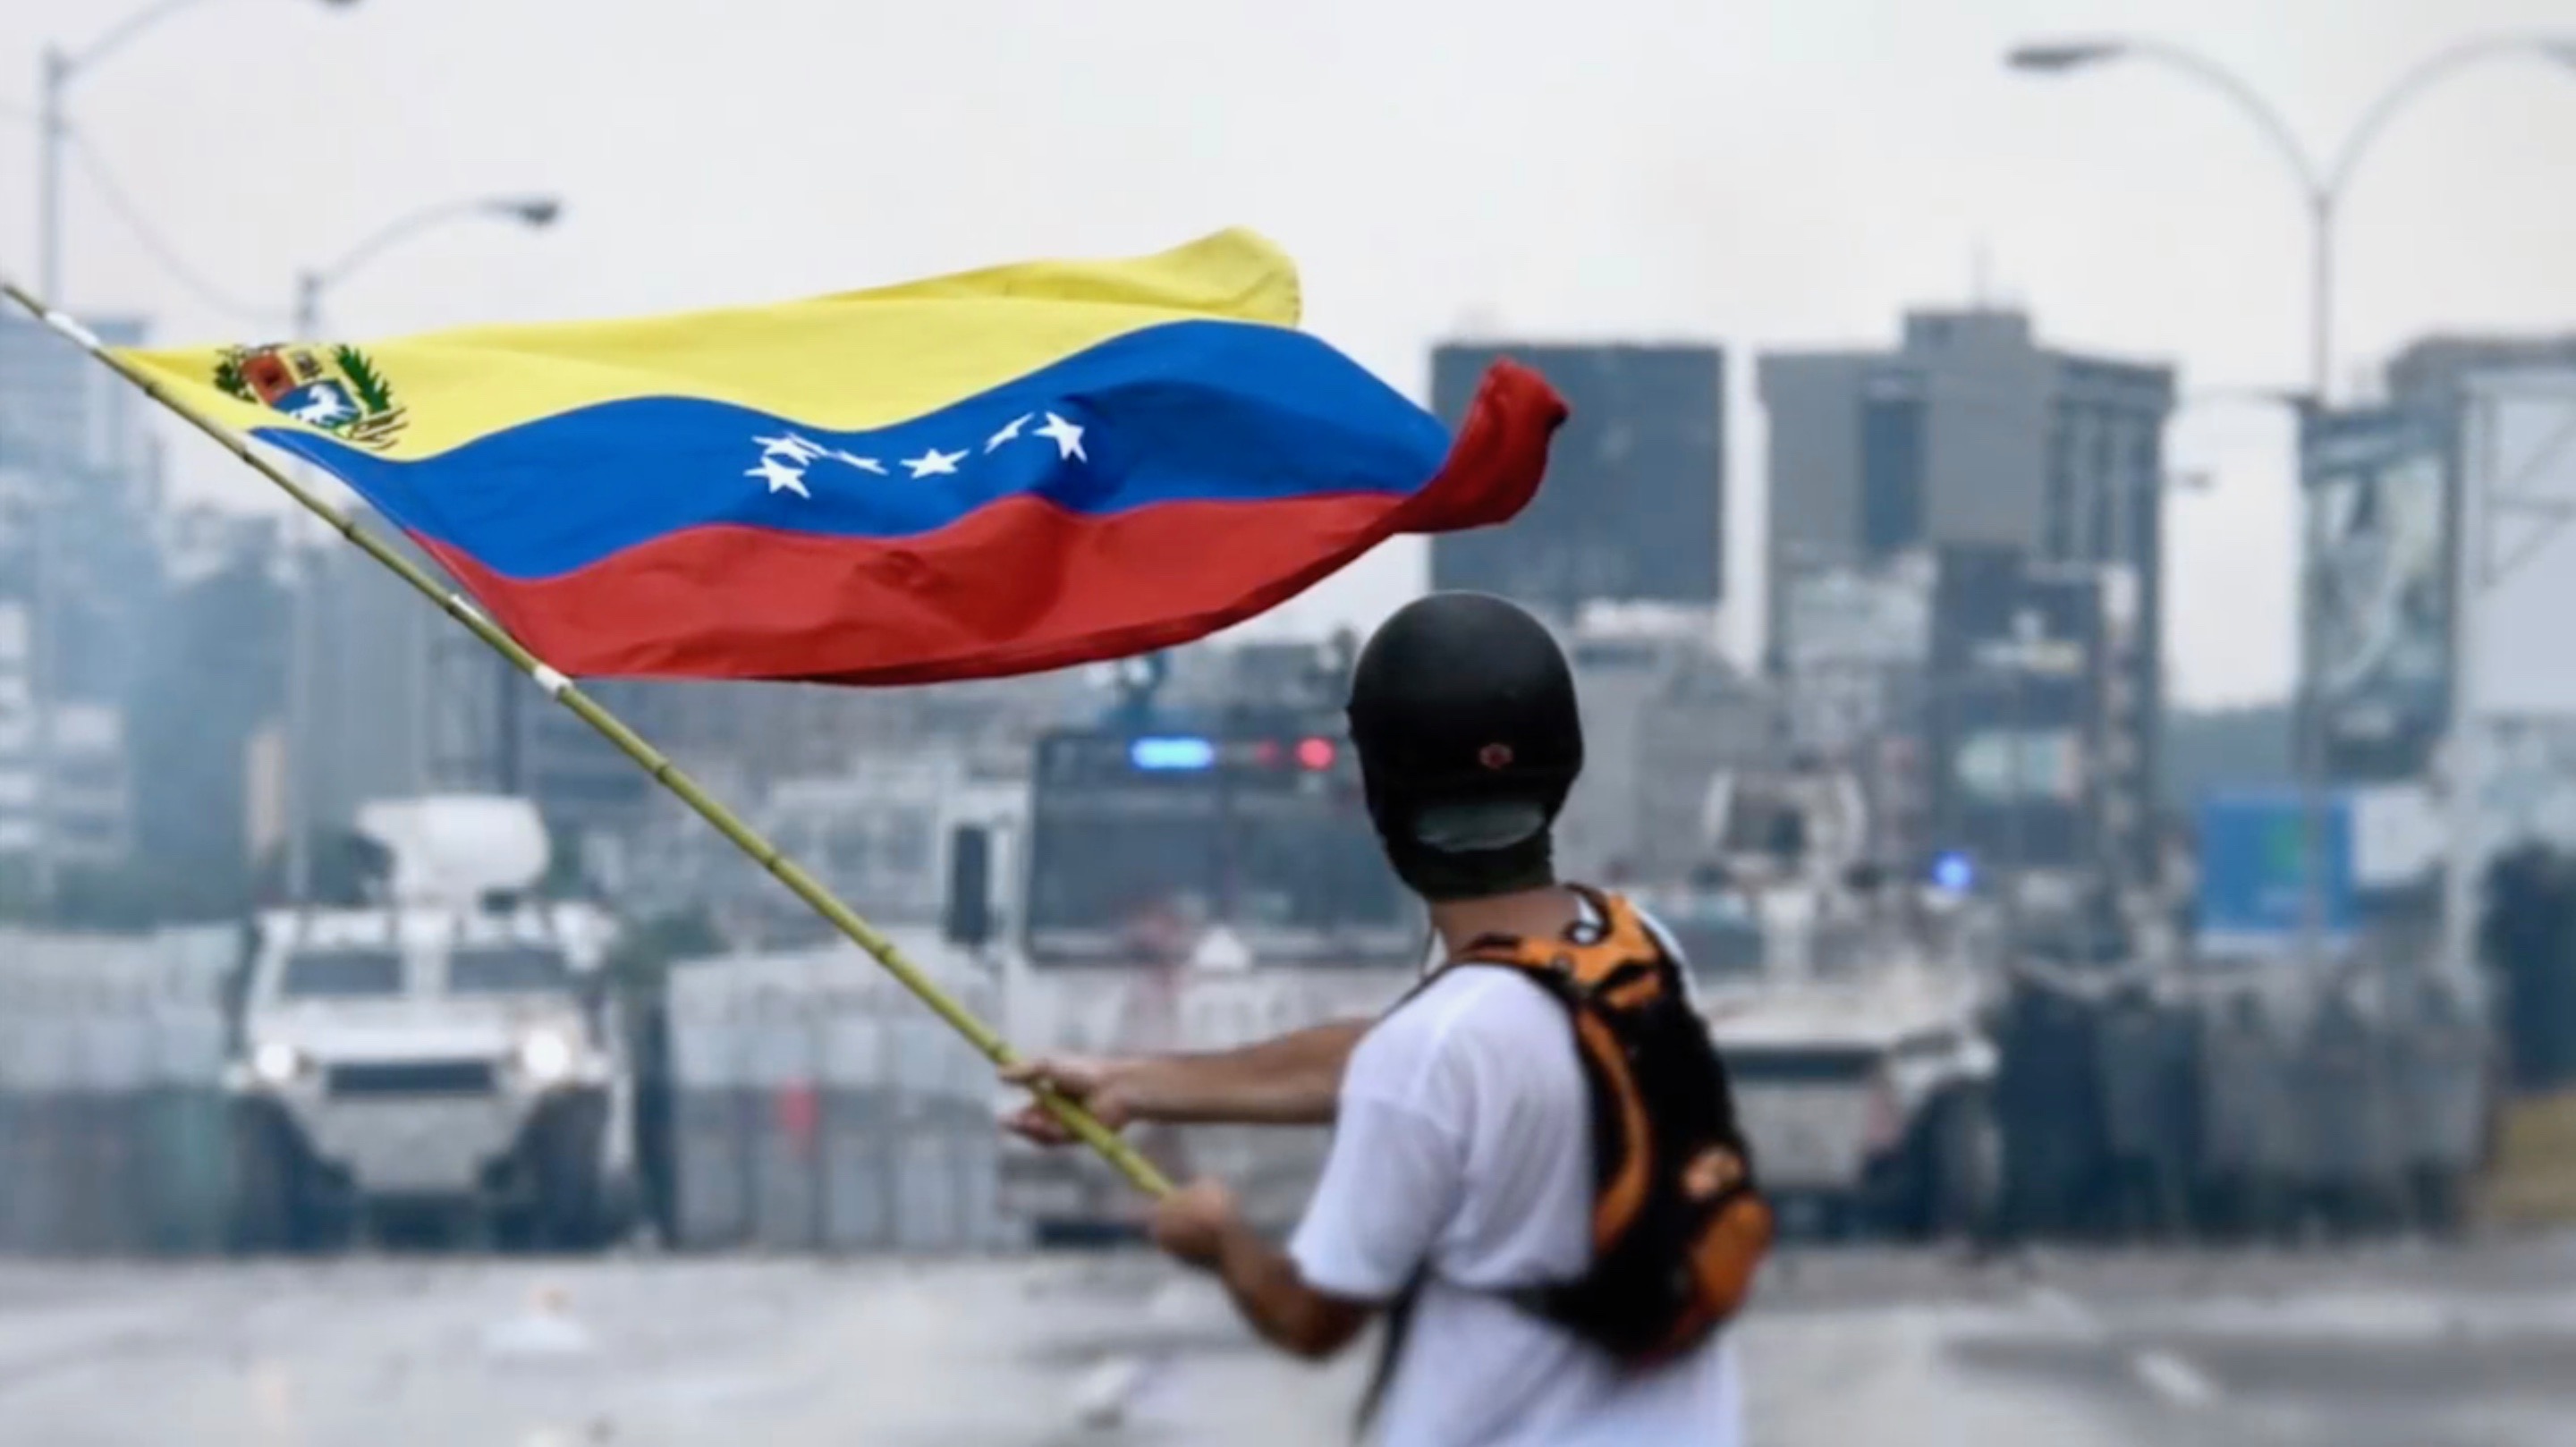 Solving the Economic & Security Crisis in Venezuela